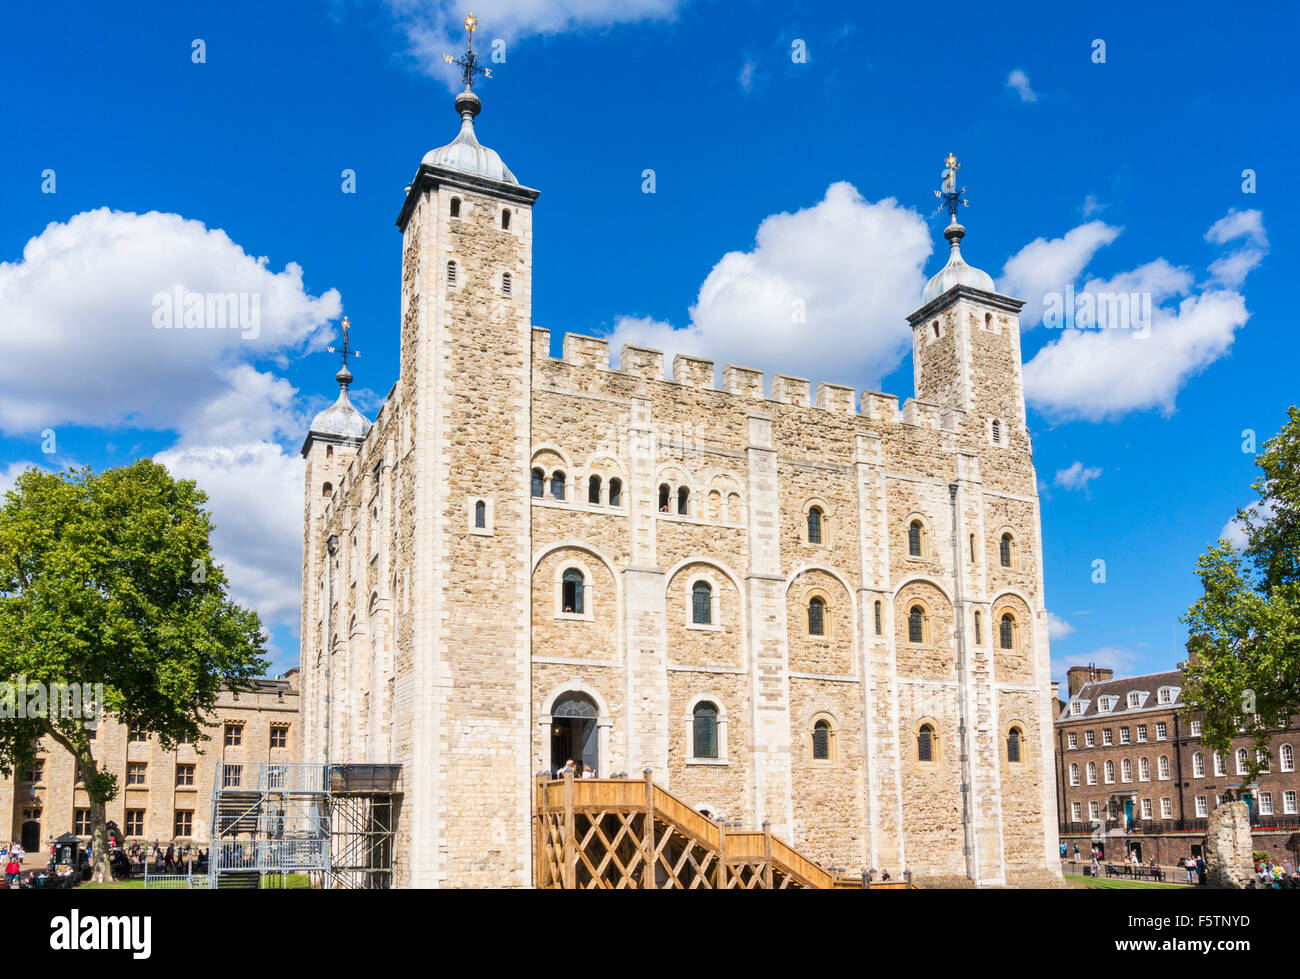 La torre bianca ingresso all'interno della Torre di Londra City di Londra Inghilterra GB UK EU Europe Foto Stock